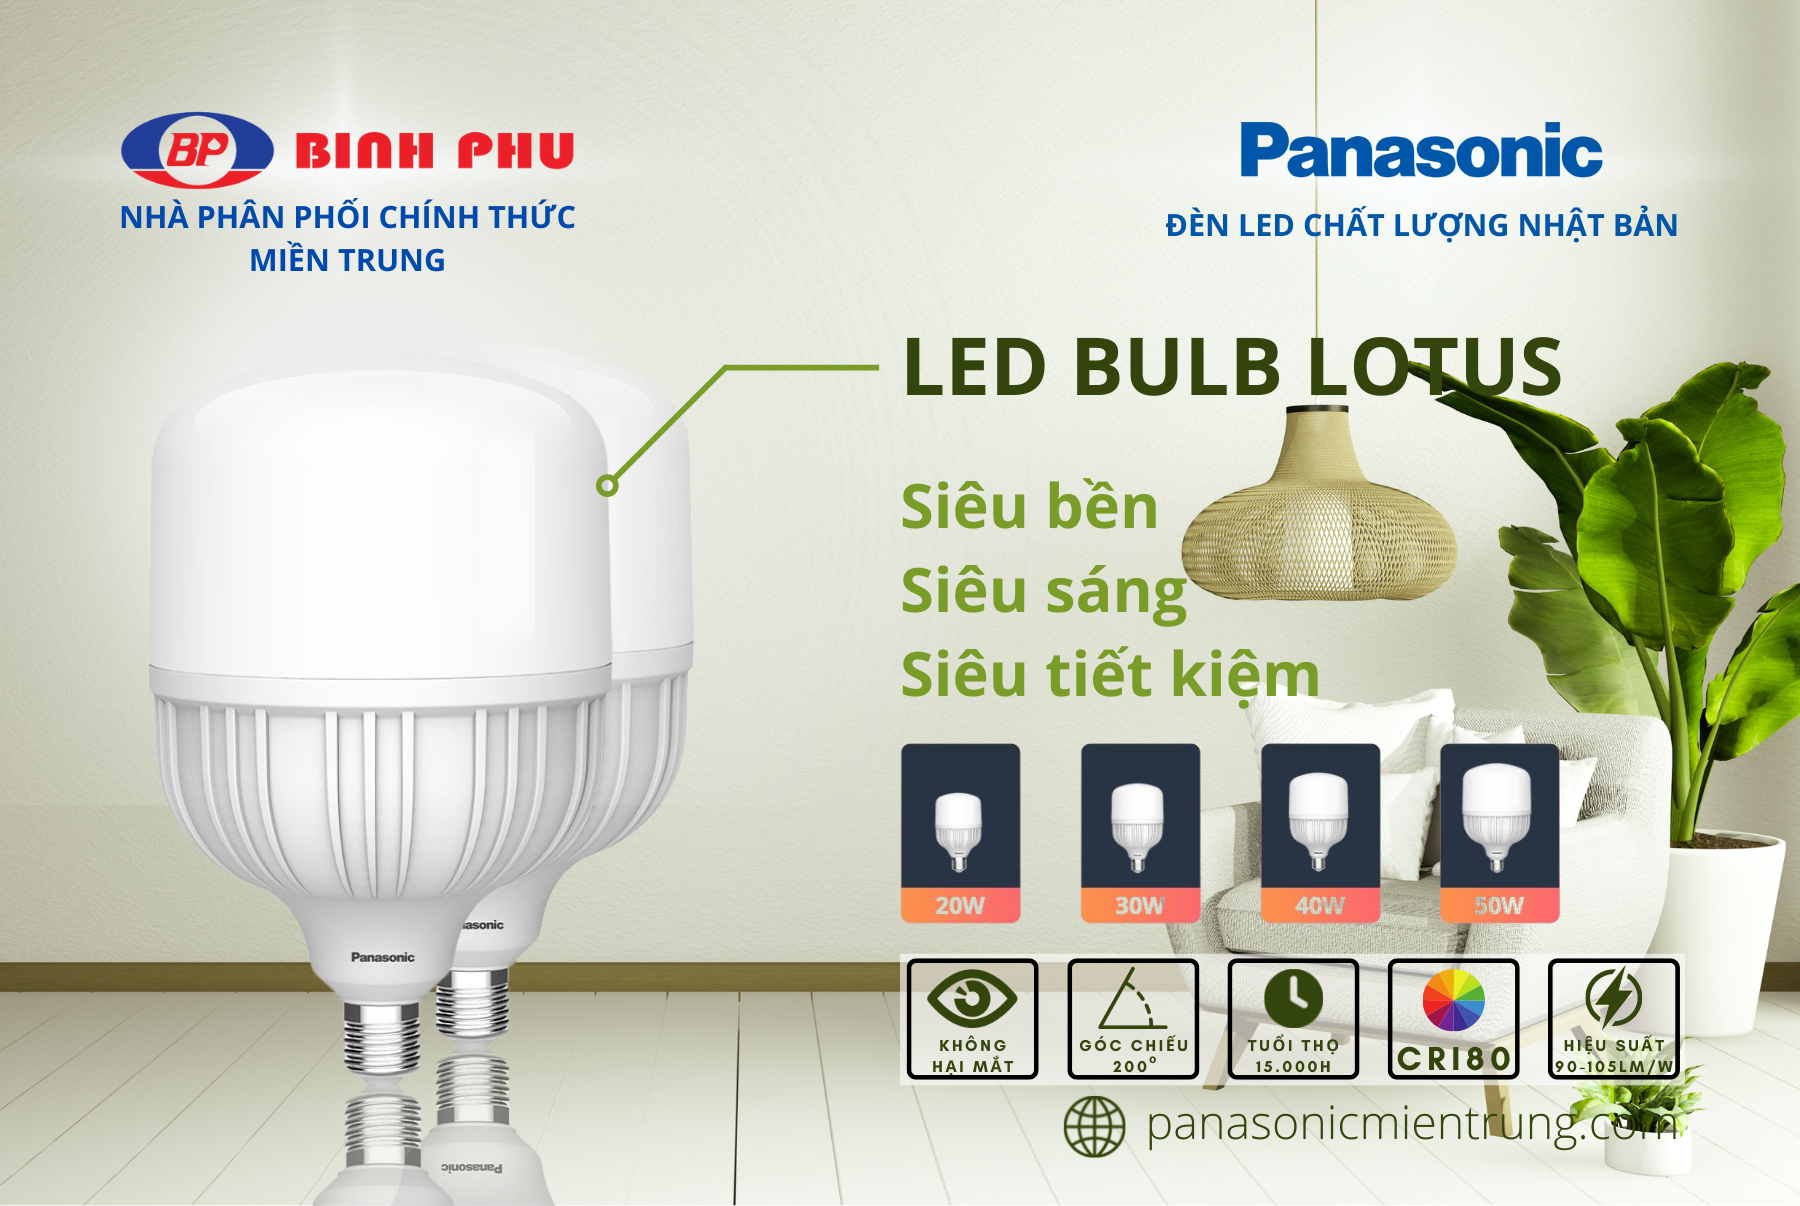 Đèn LED Bulb Trụ Trắng Panasonic Lotus Đuôi E27 Công suất 20W/30W/40W/50W ánh sáng trắng 6500K, tiết kiệm điện